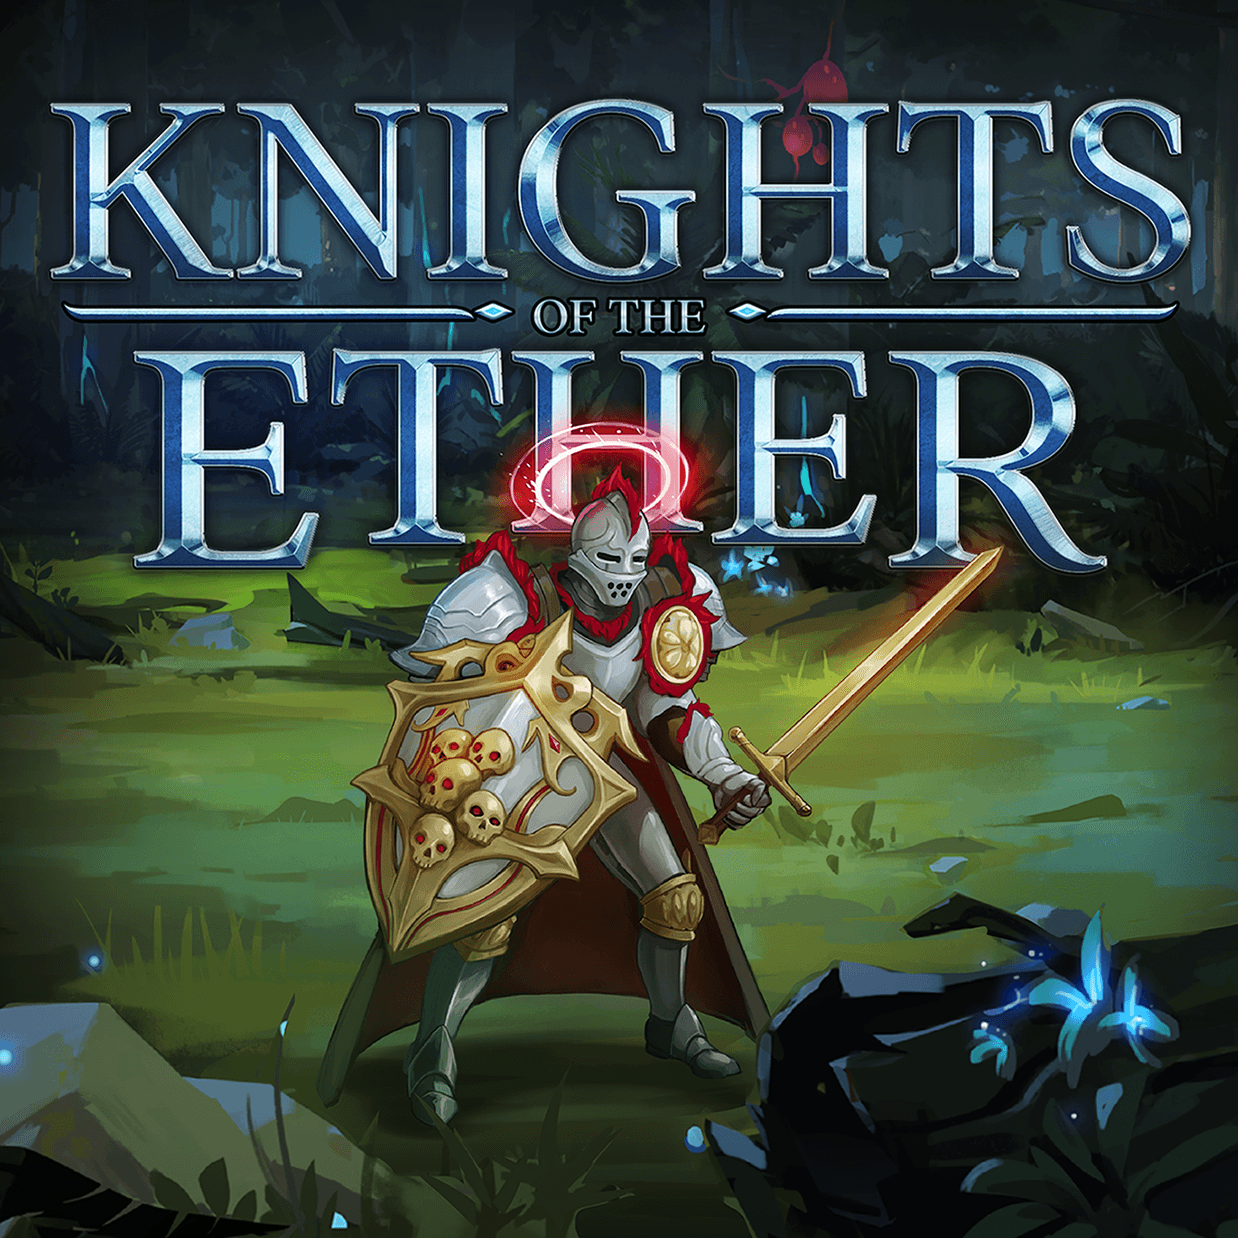 KnightsOfTheEthDev